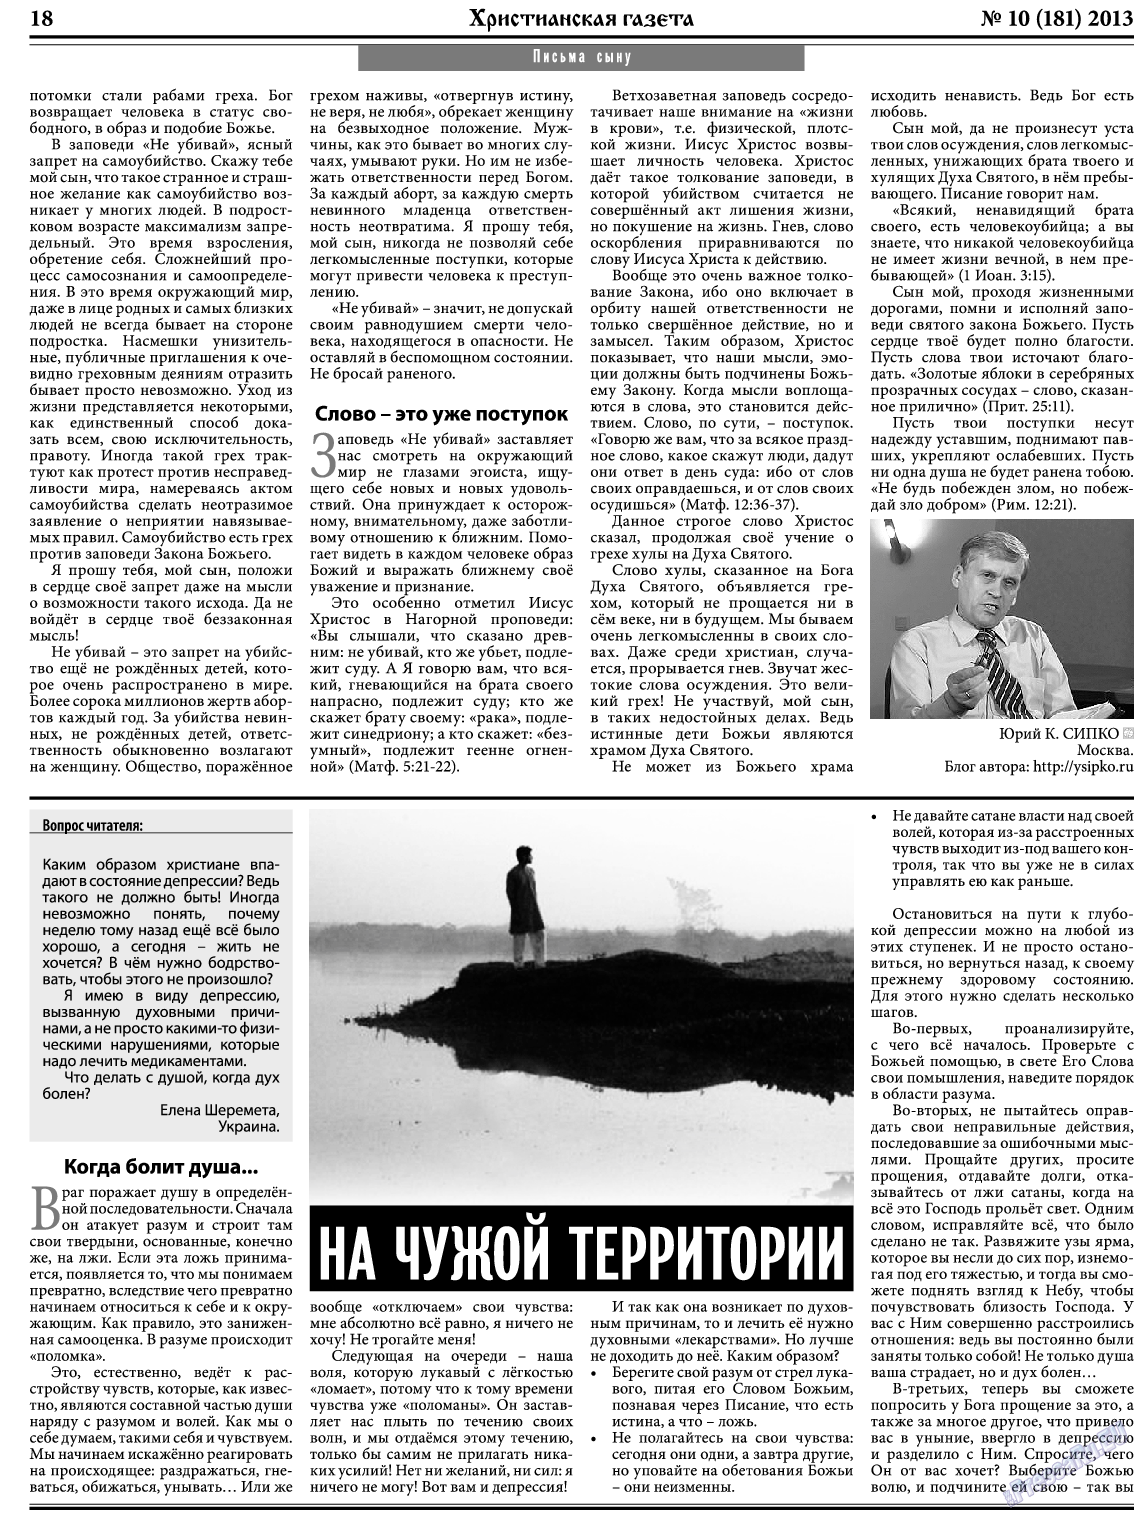 Христианская газета, газета. 2013 №10 стр.26